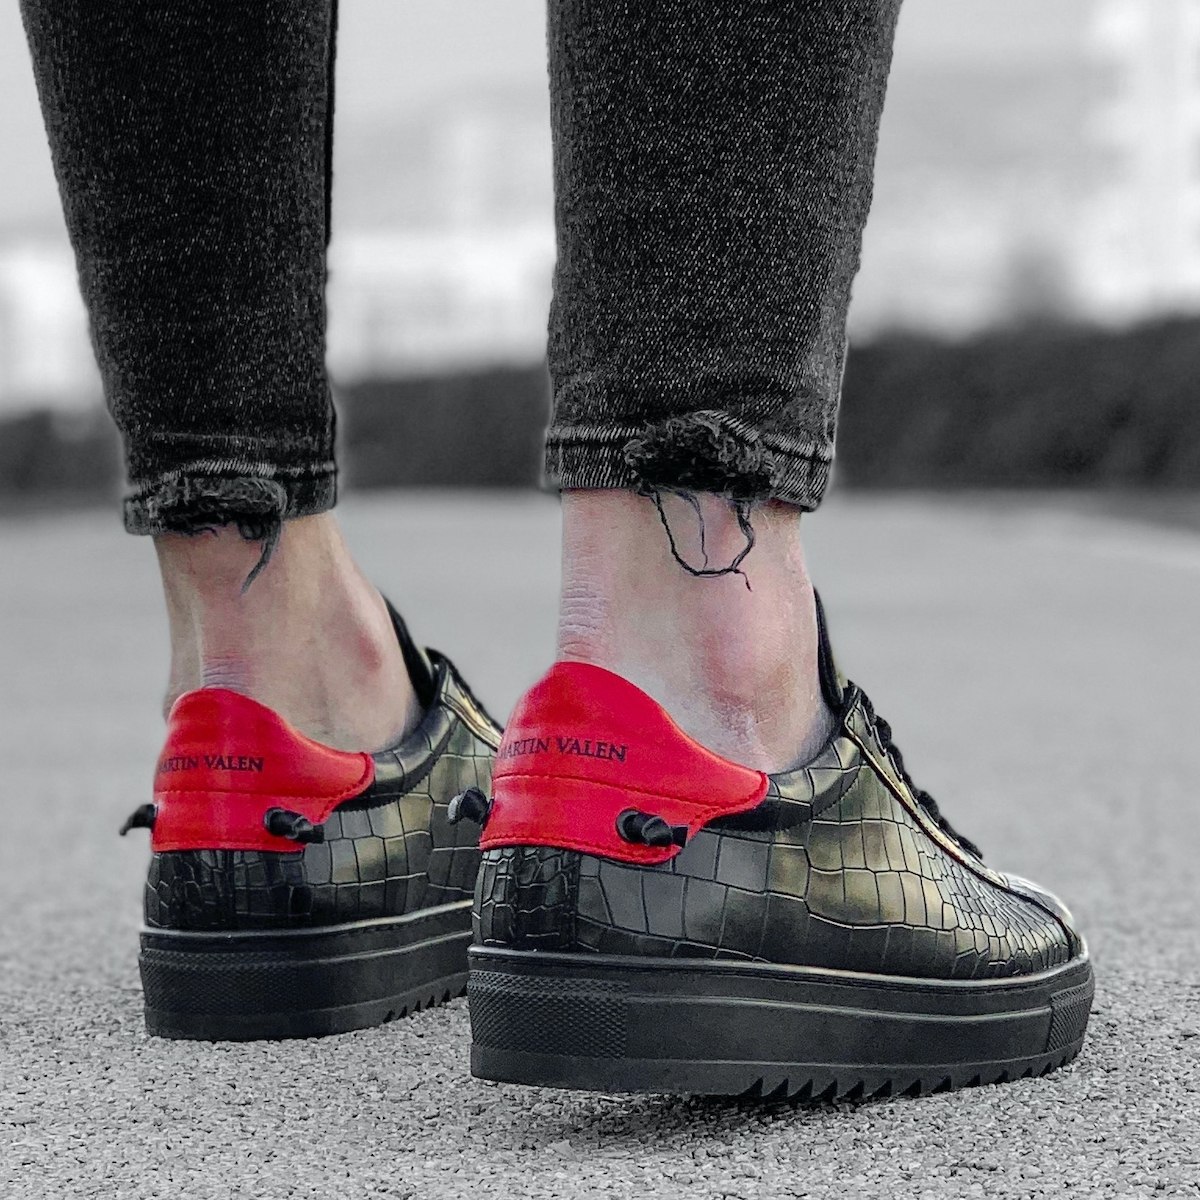 Herren Low Top Sneakers Schuhe mit Krokodilleder Optik in schwarz-rot | Martin Valen